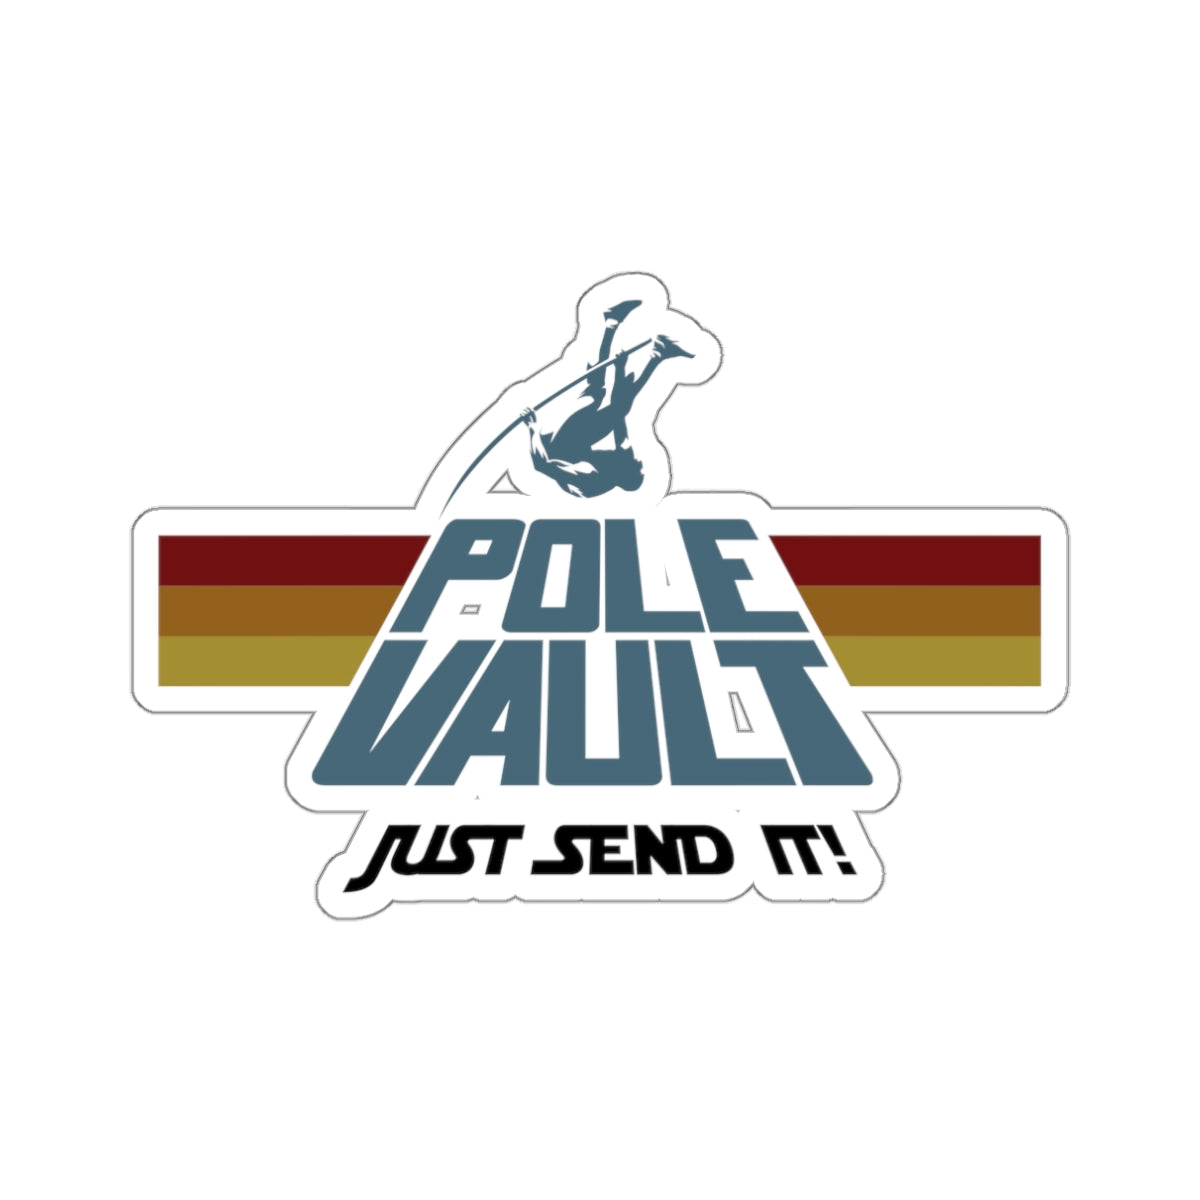 Pole Vault Just Send It - Die-Cut Sticker